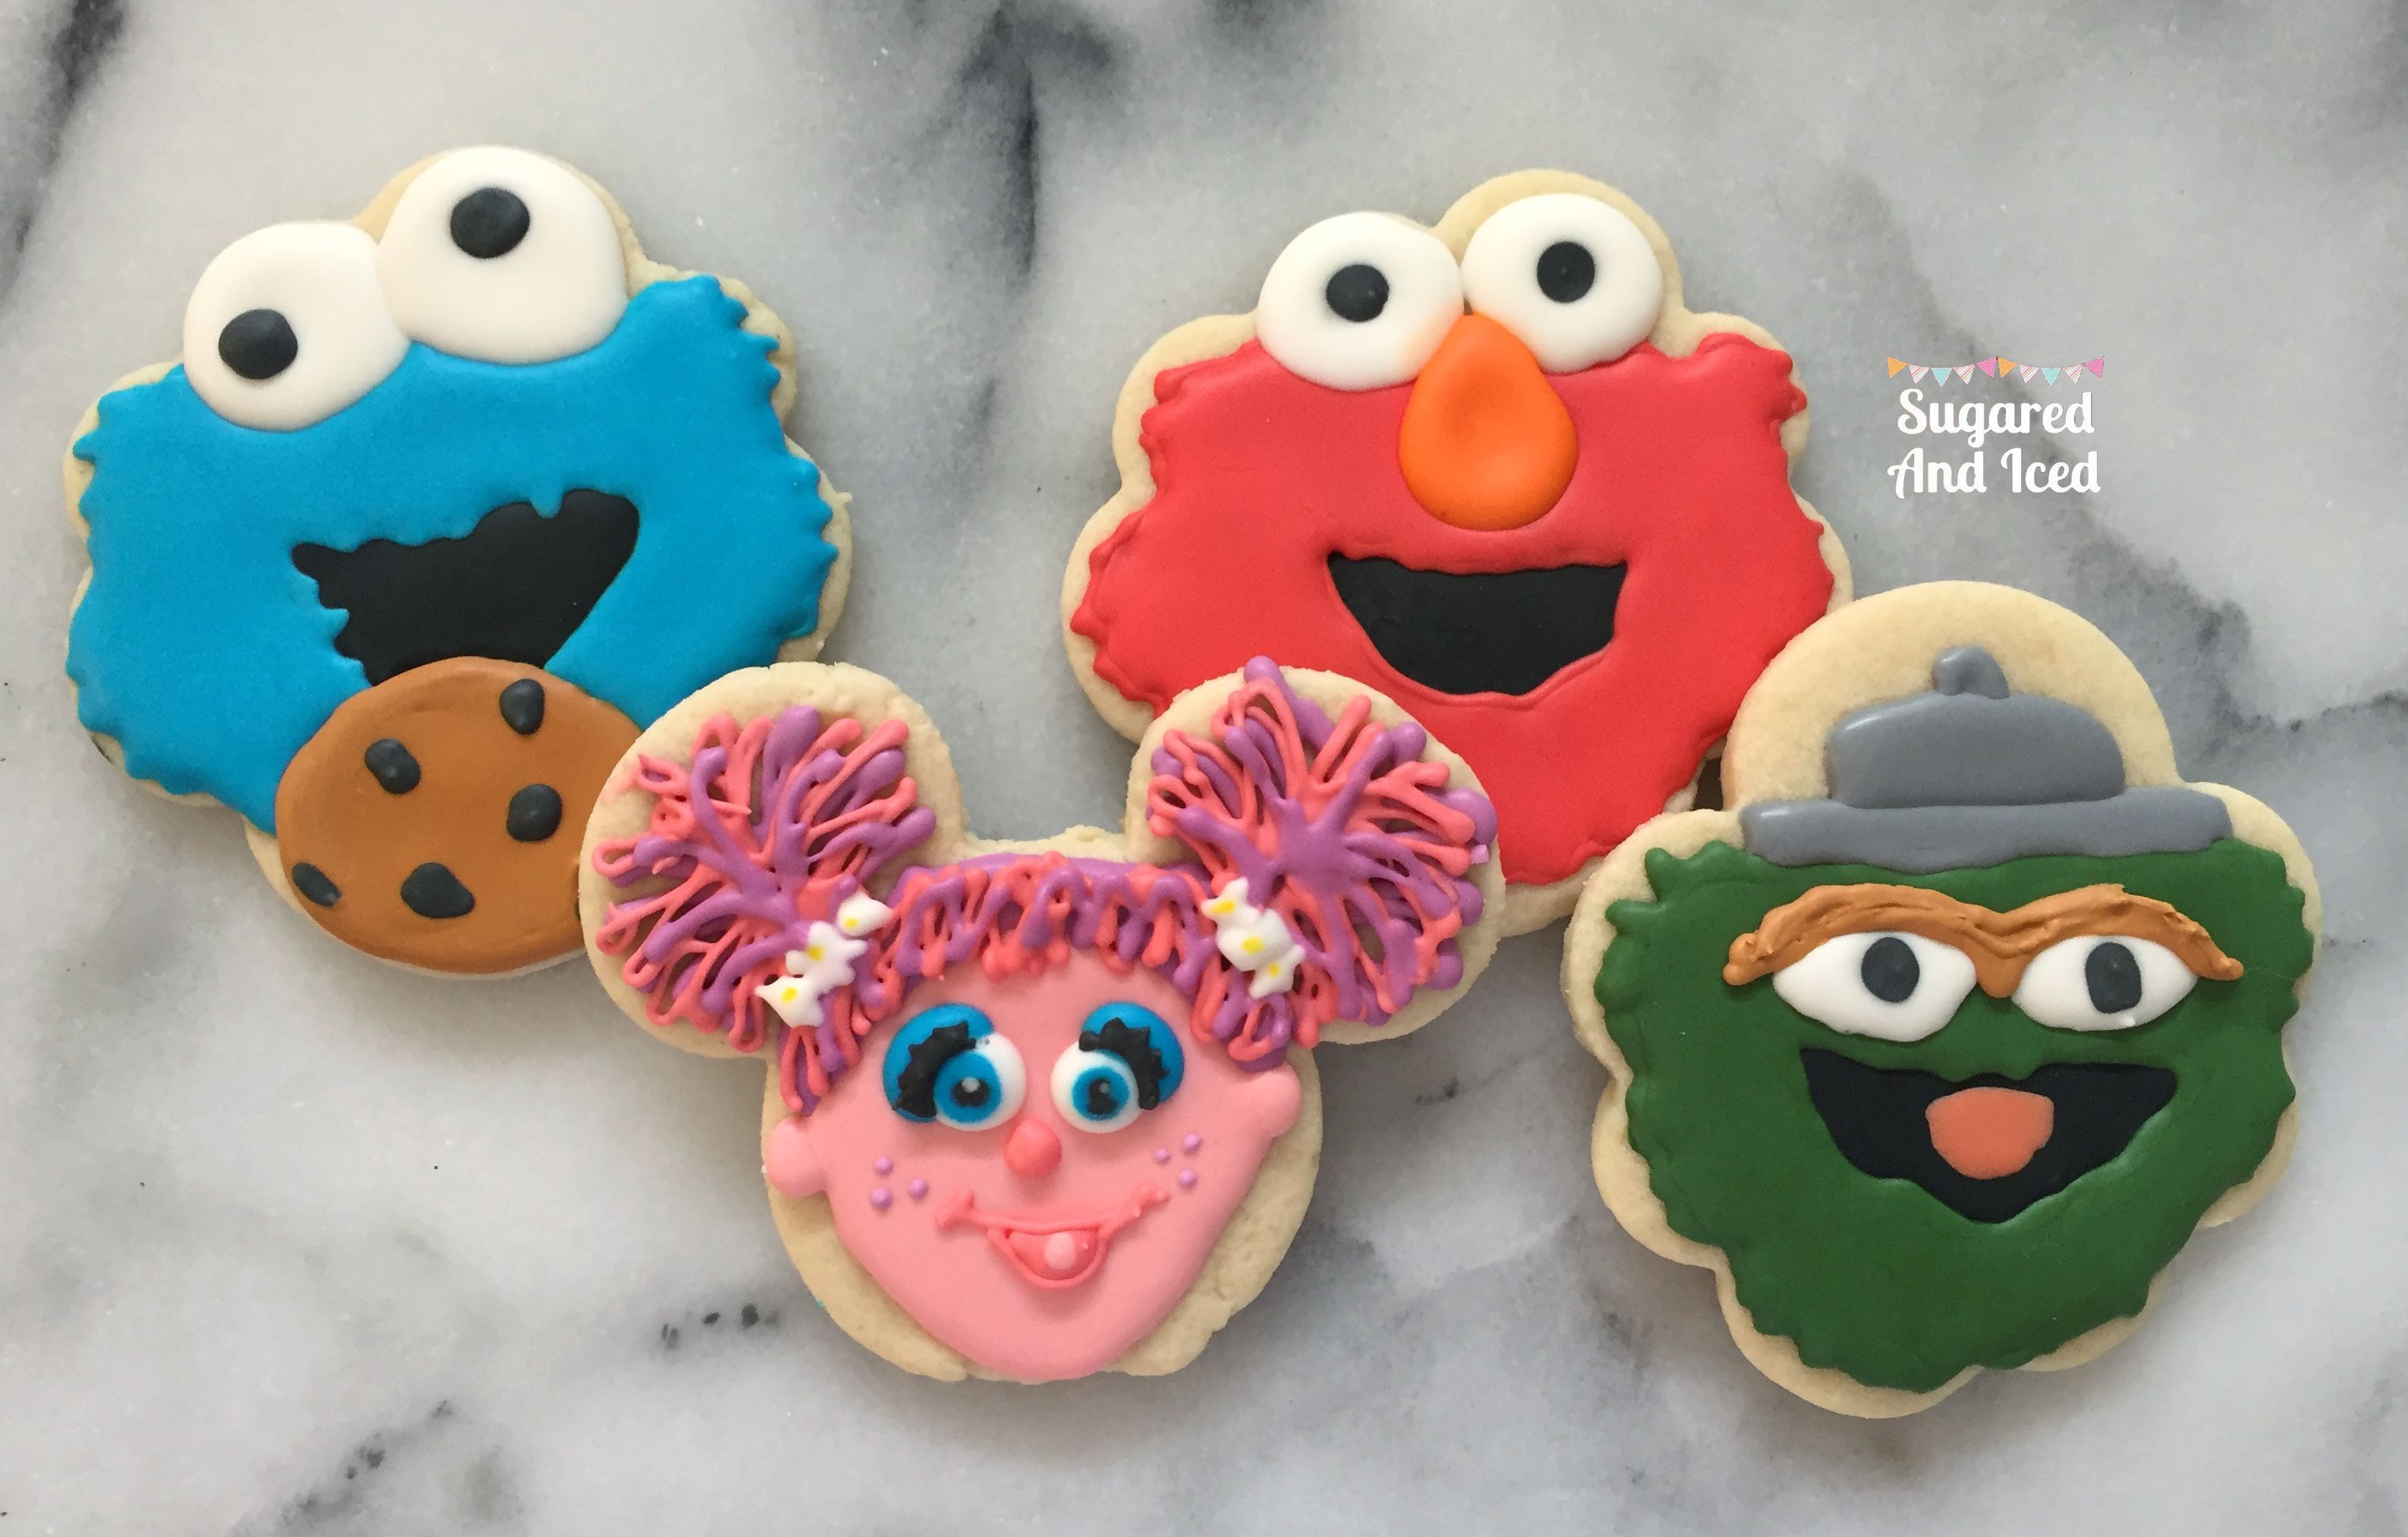 Sesame Street: Elmo, Cookie Monster, Abby Cadabby, Oscar the Grouch